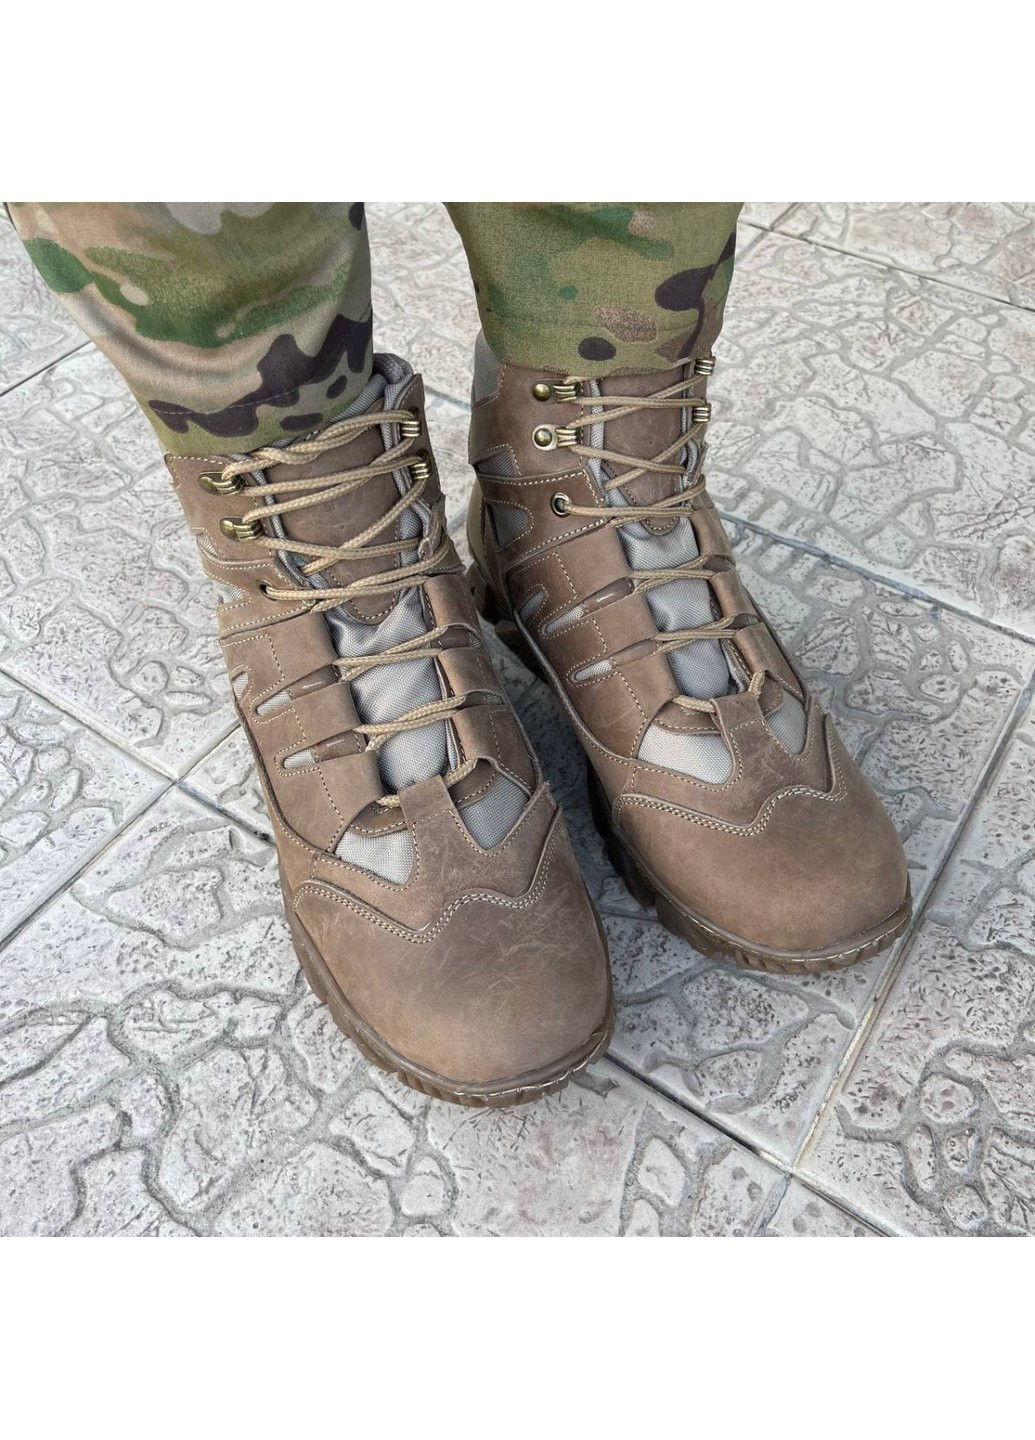 Коричневые осенние ботинки военные тактические всу (зсу) 7528 43 р 28,5 см коричневые Power